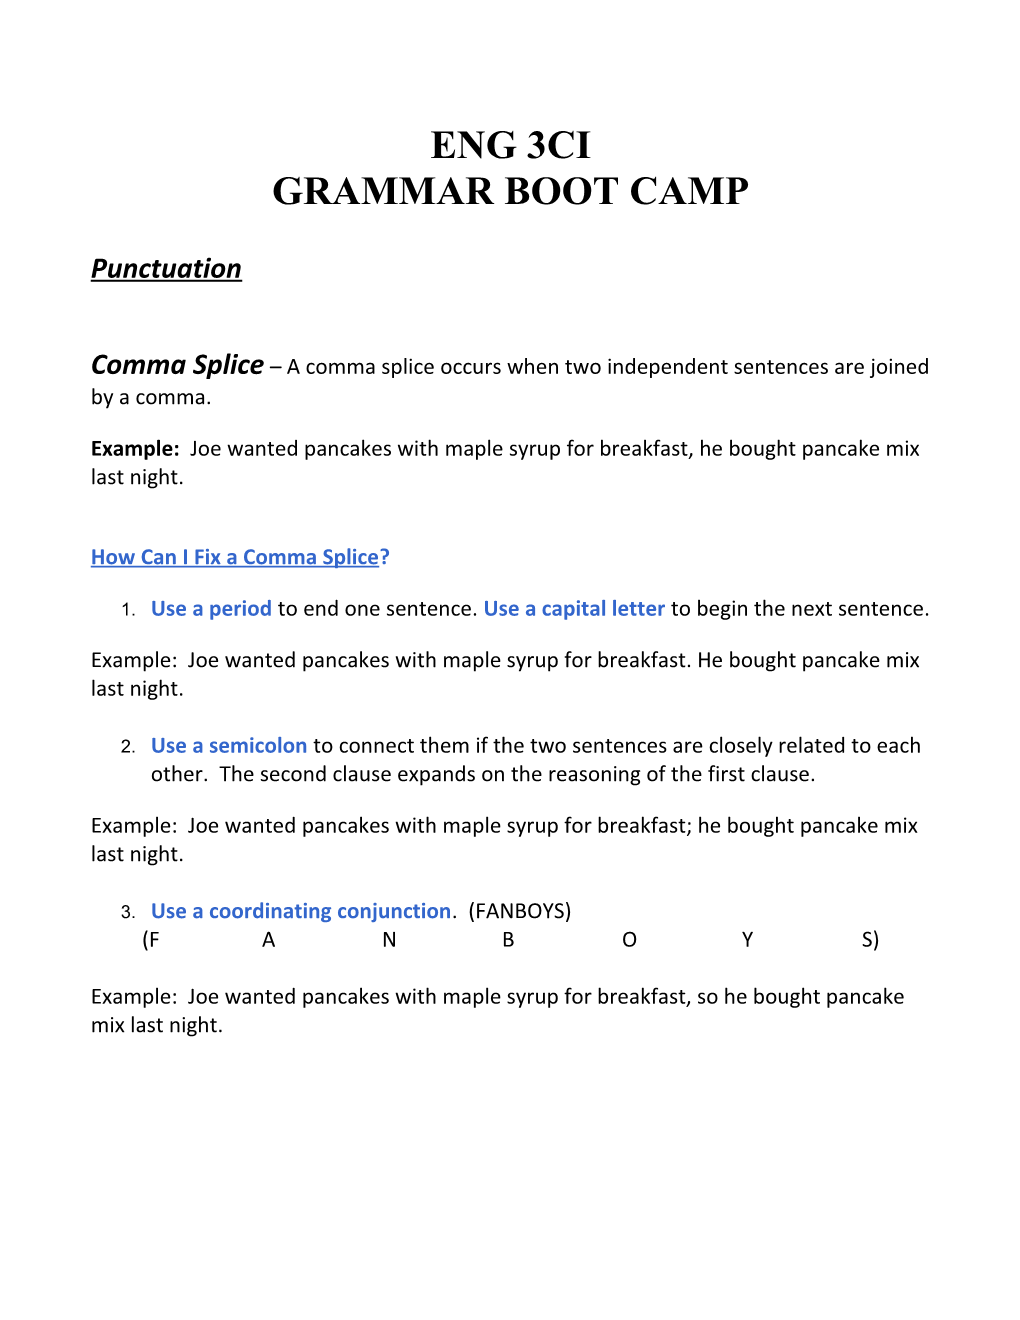 Grammar Boot Camp